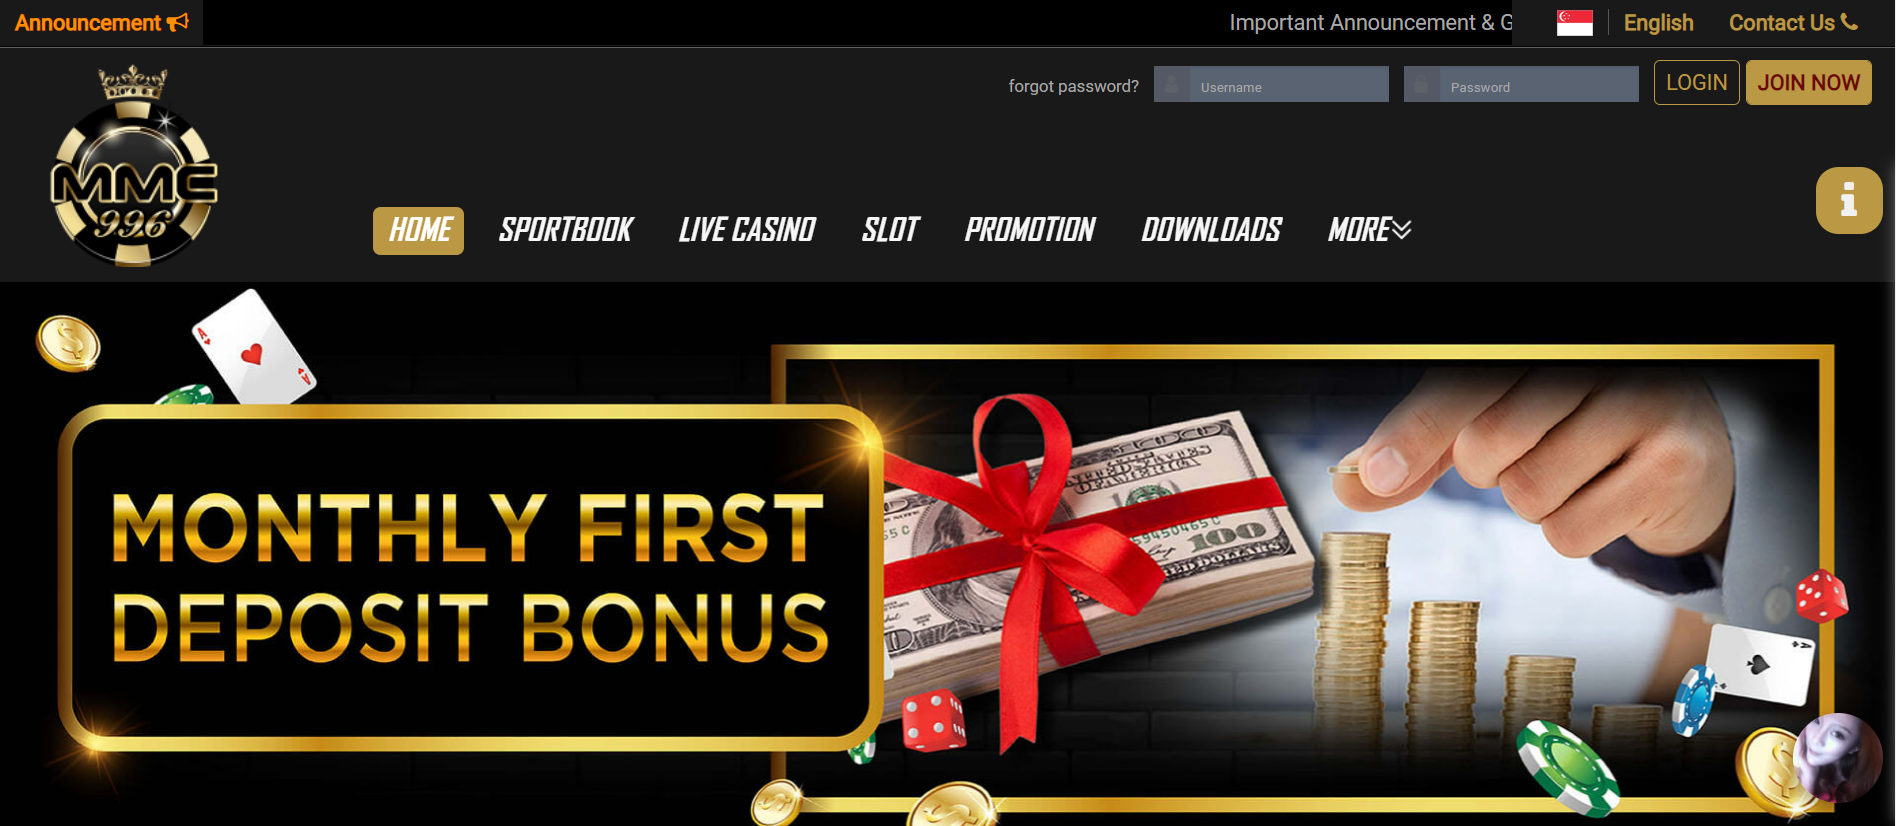 MMC996 Online Casino Singapore Homepage